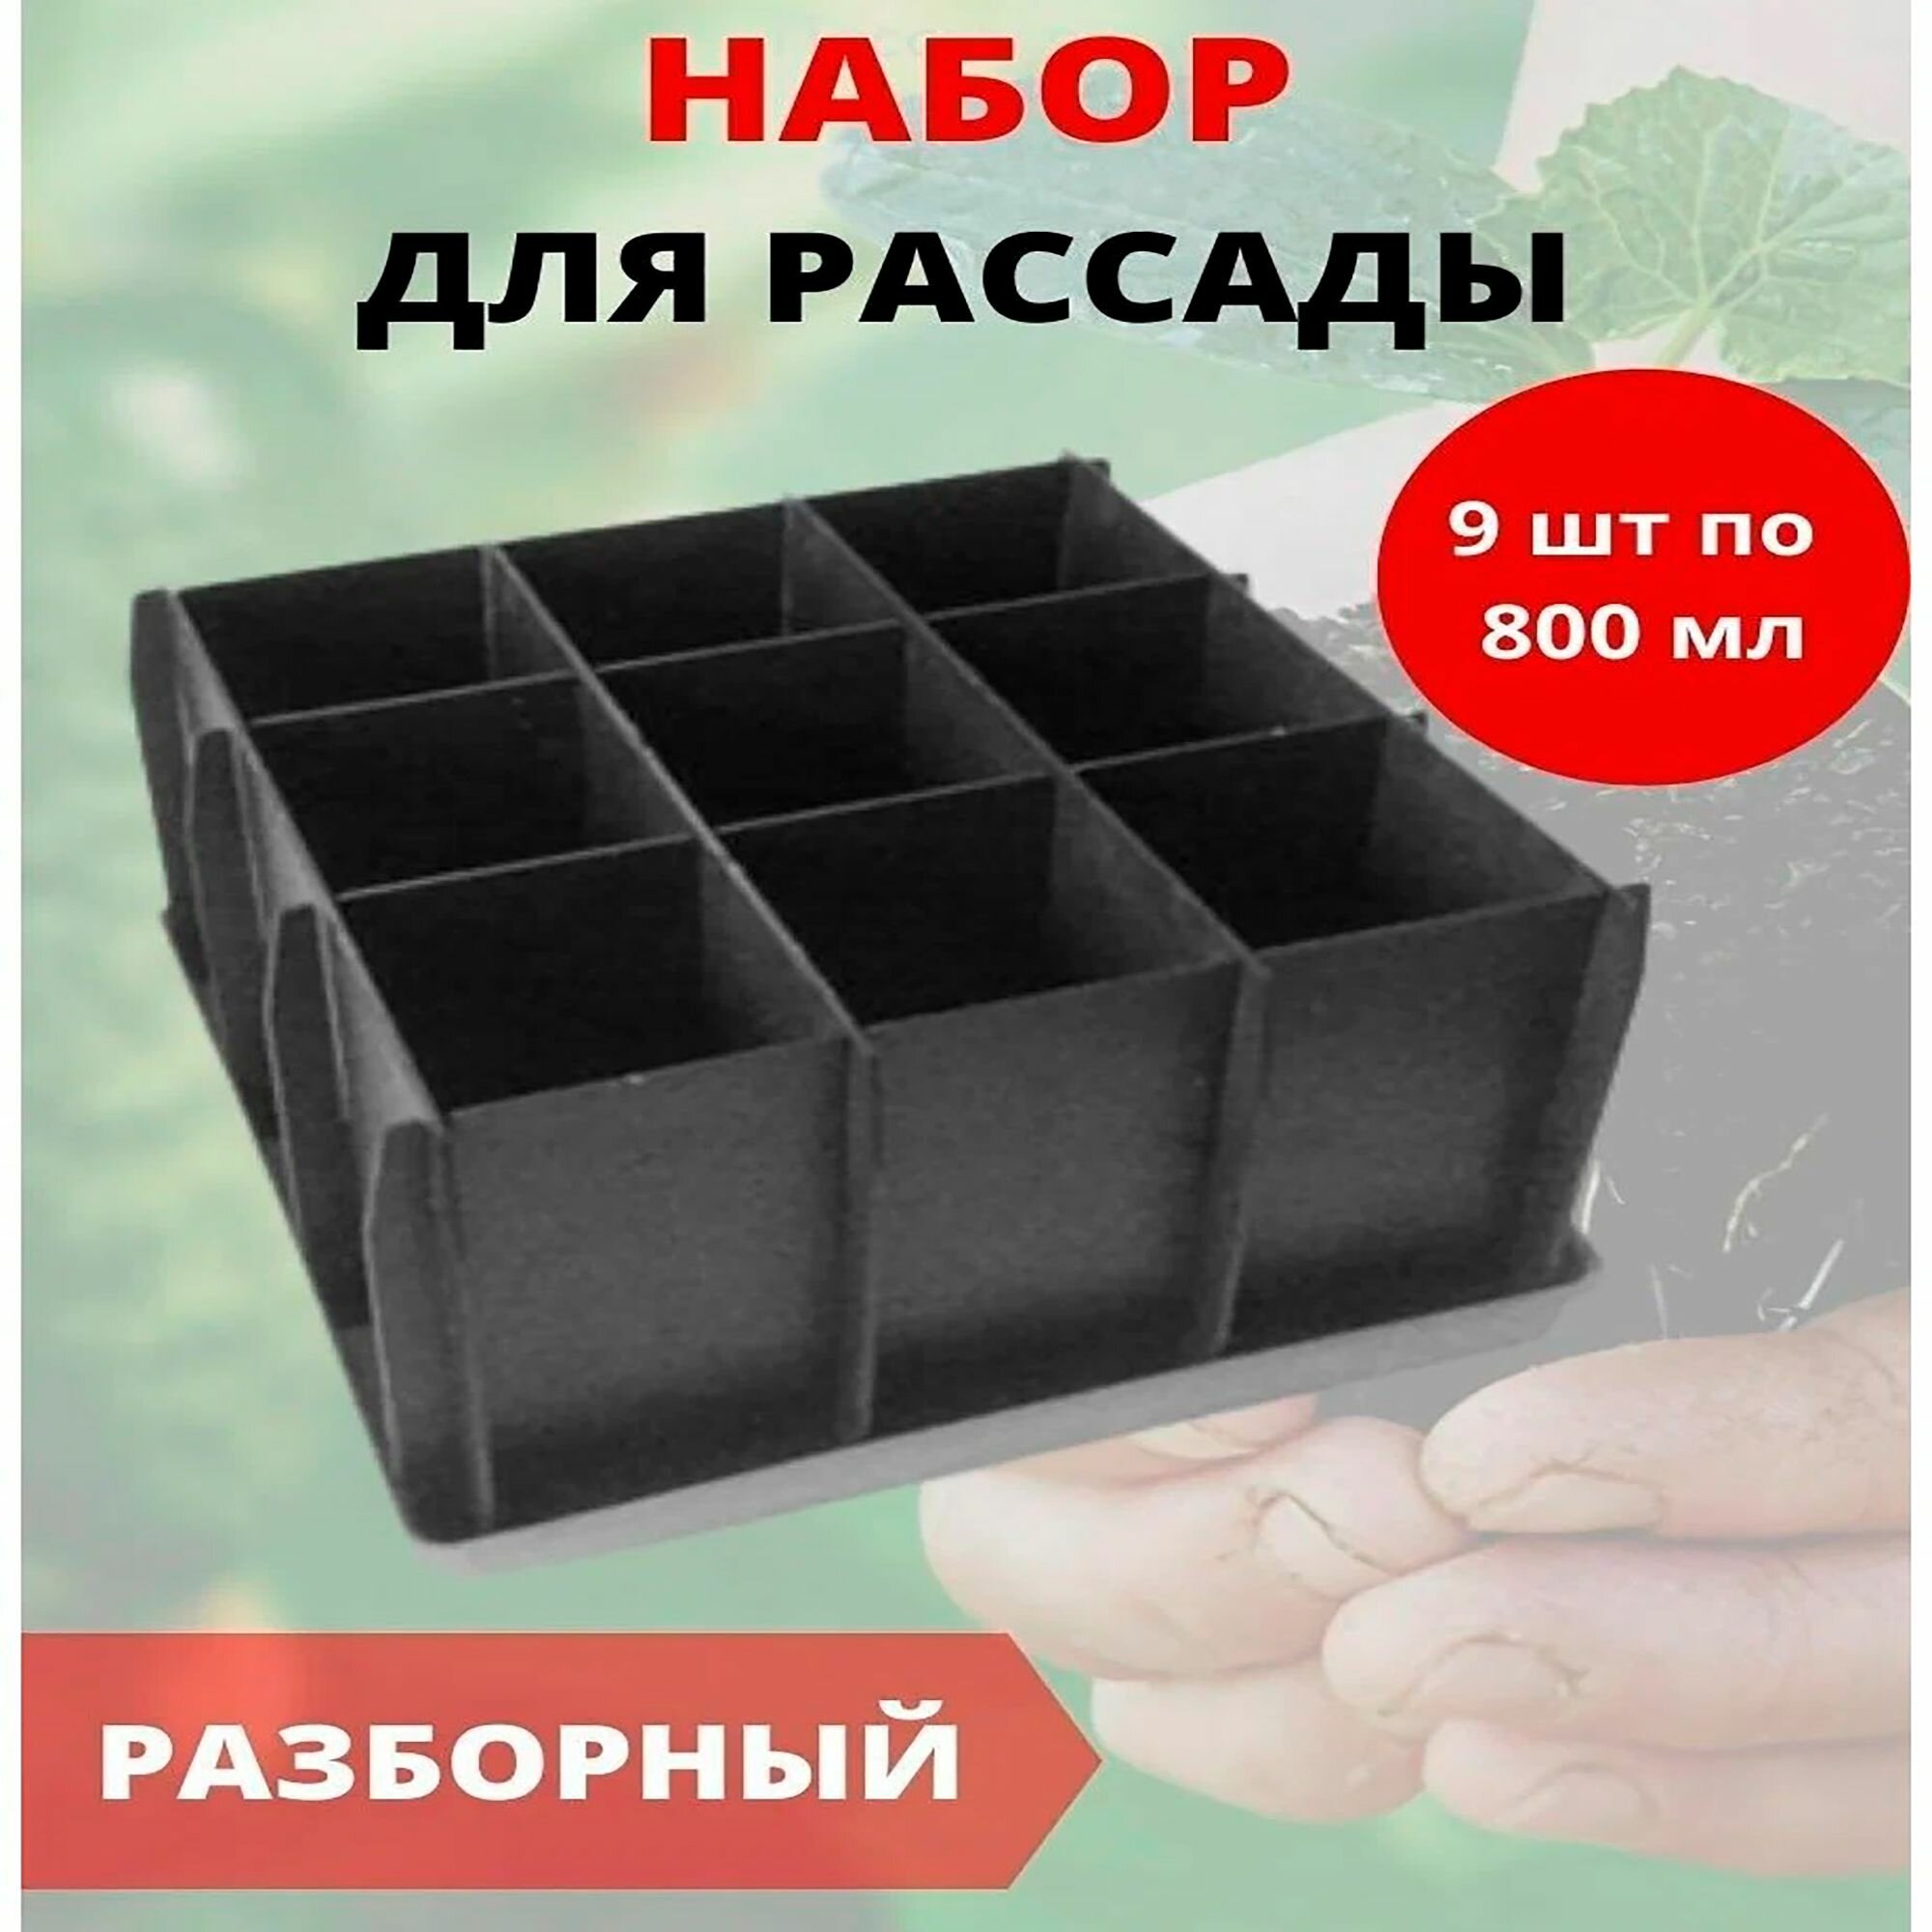 Ящик для рассады пластиковый разборный с поддоном 9 ячеек 280*280*100 мм.